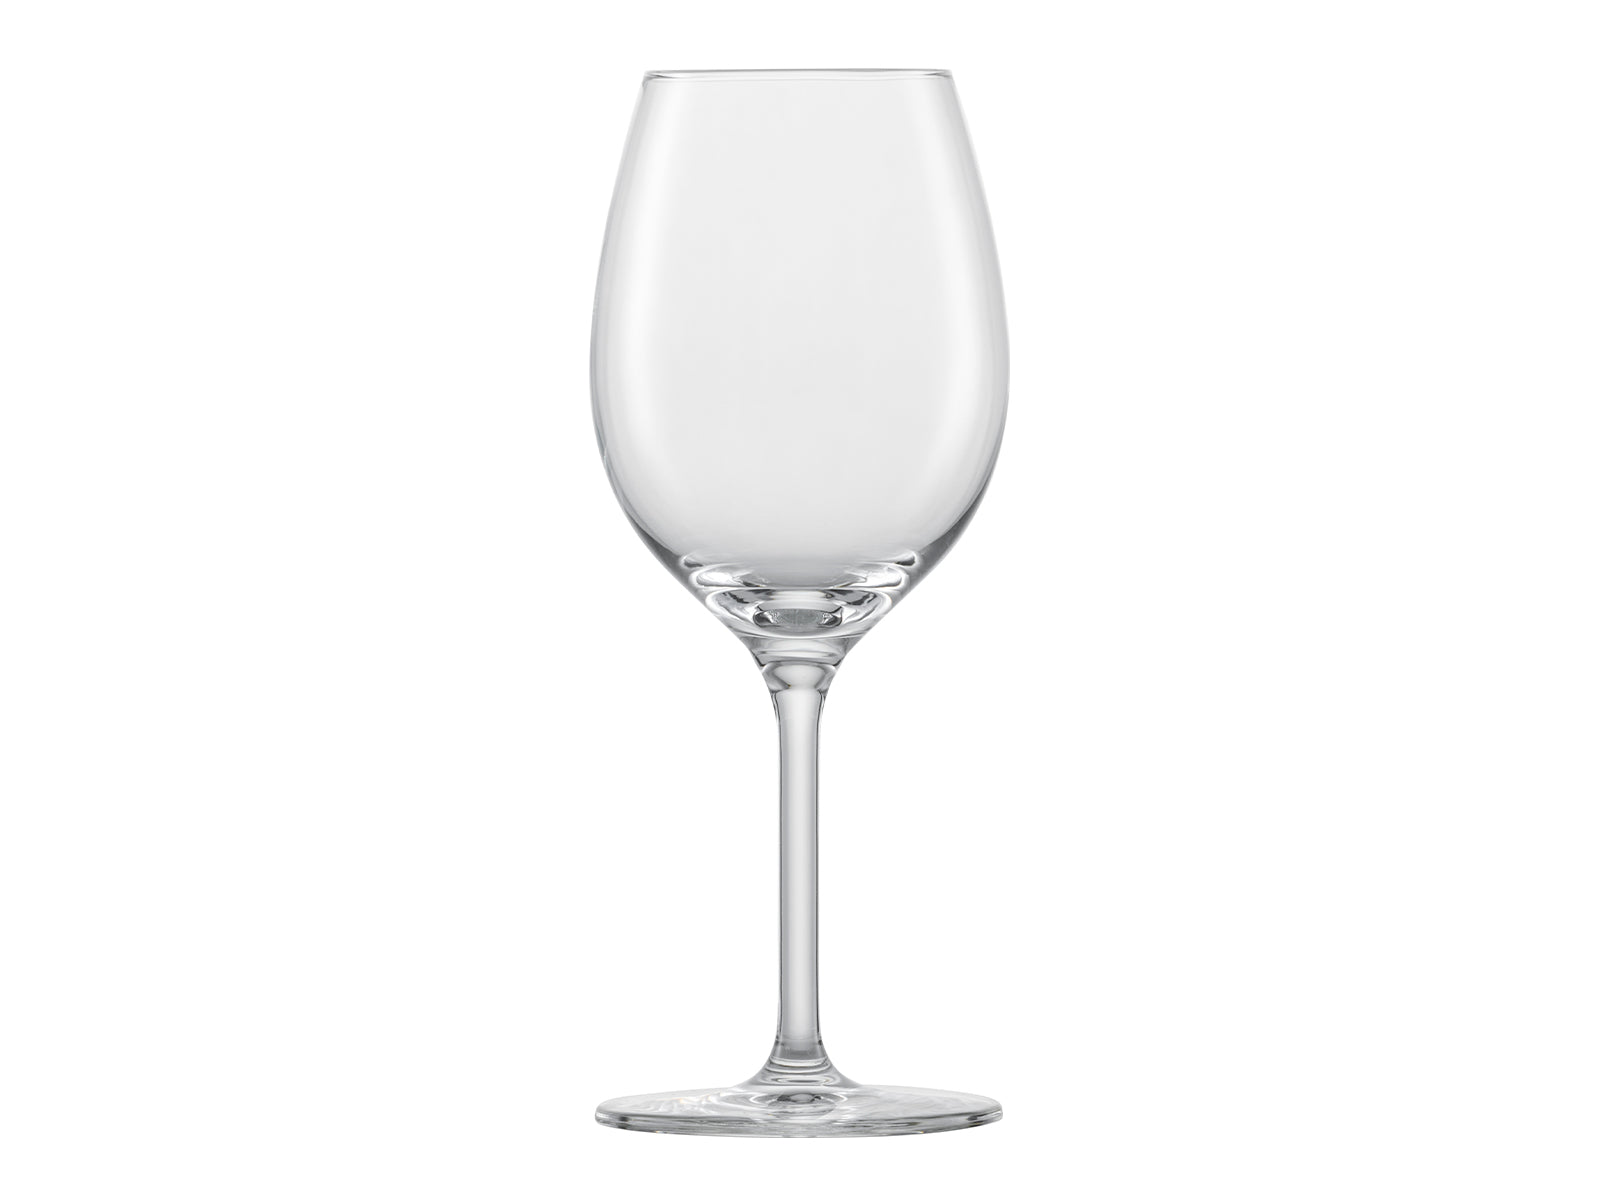 Copa vino blanco Canaletto Bormioli elaborada en vidrio transparente.